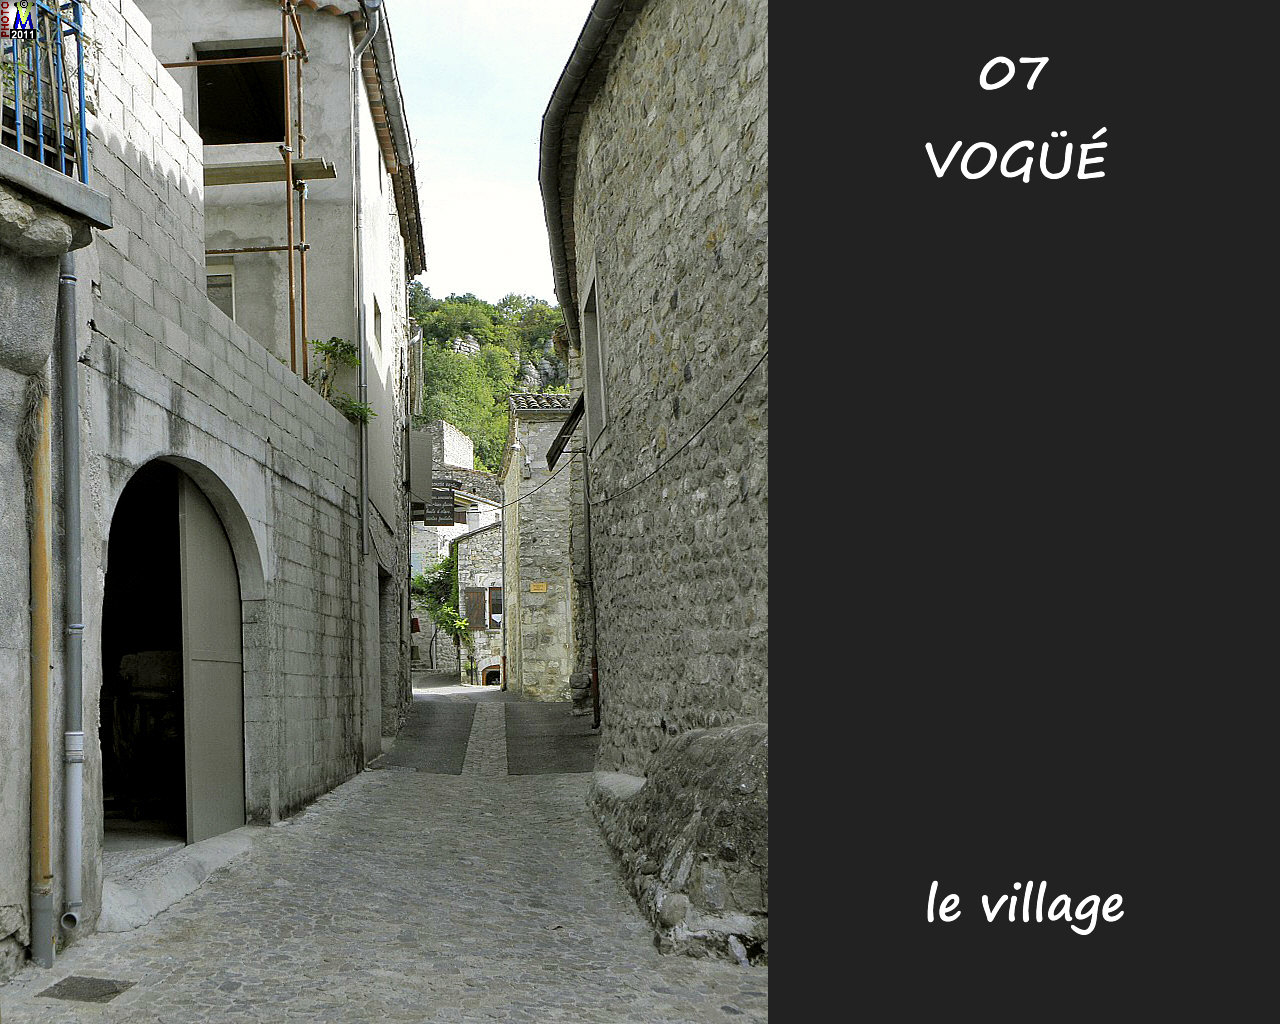 07VOGUE_village_154.jpg